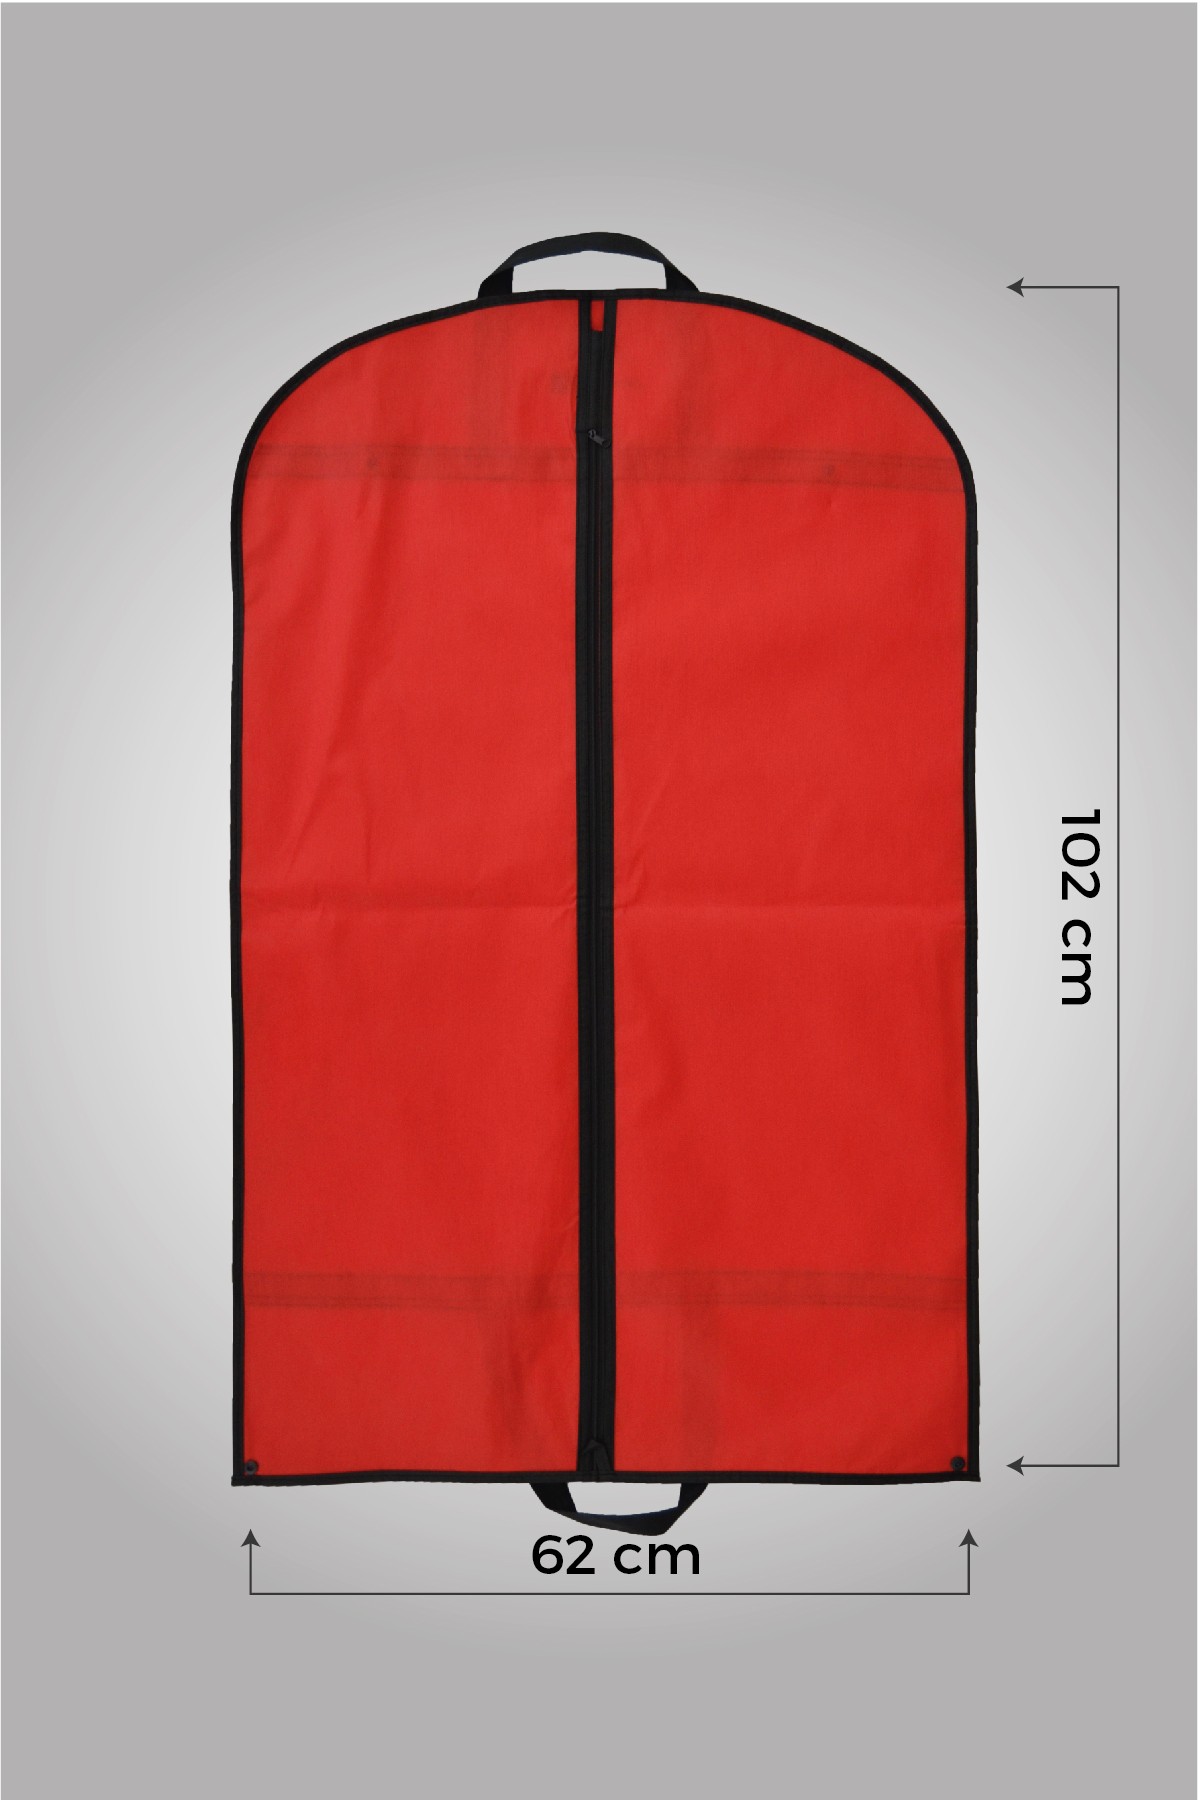 Kulplu Çıtçıtlı Kırmızı Gamboç Ceket - Kaban - Takım Elbise Kılıfı 62 x 102cm. 5 Adet